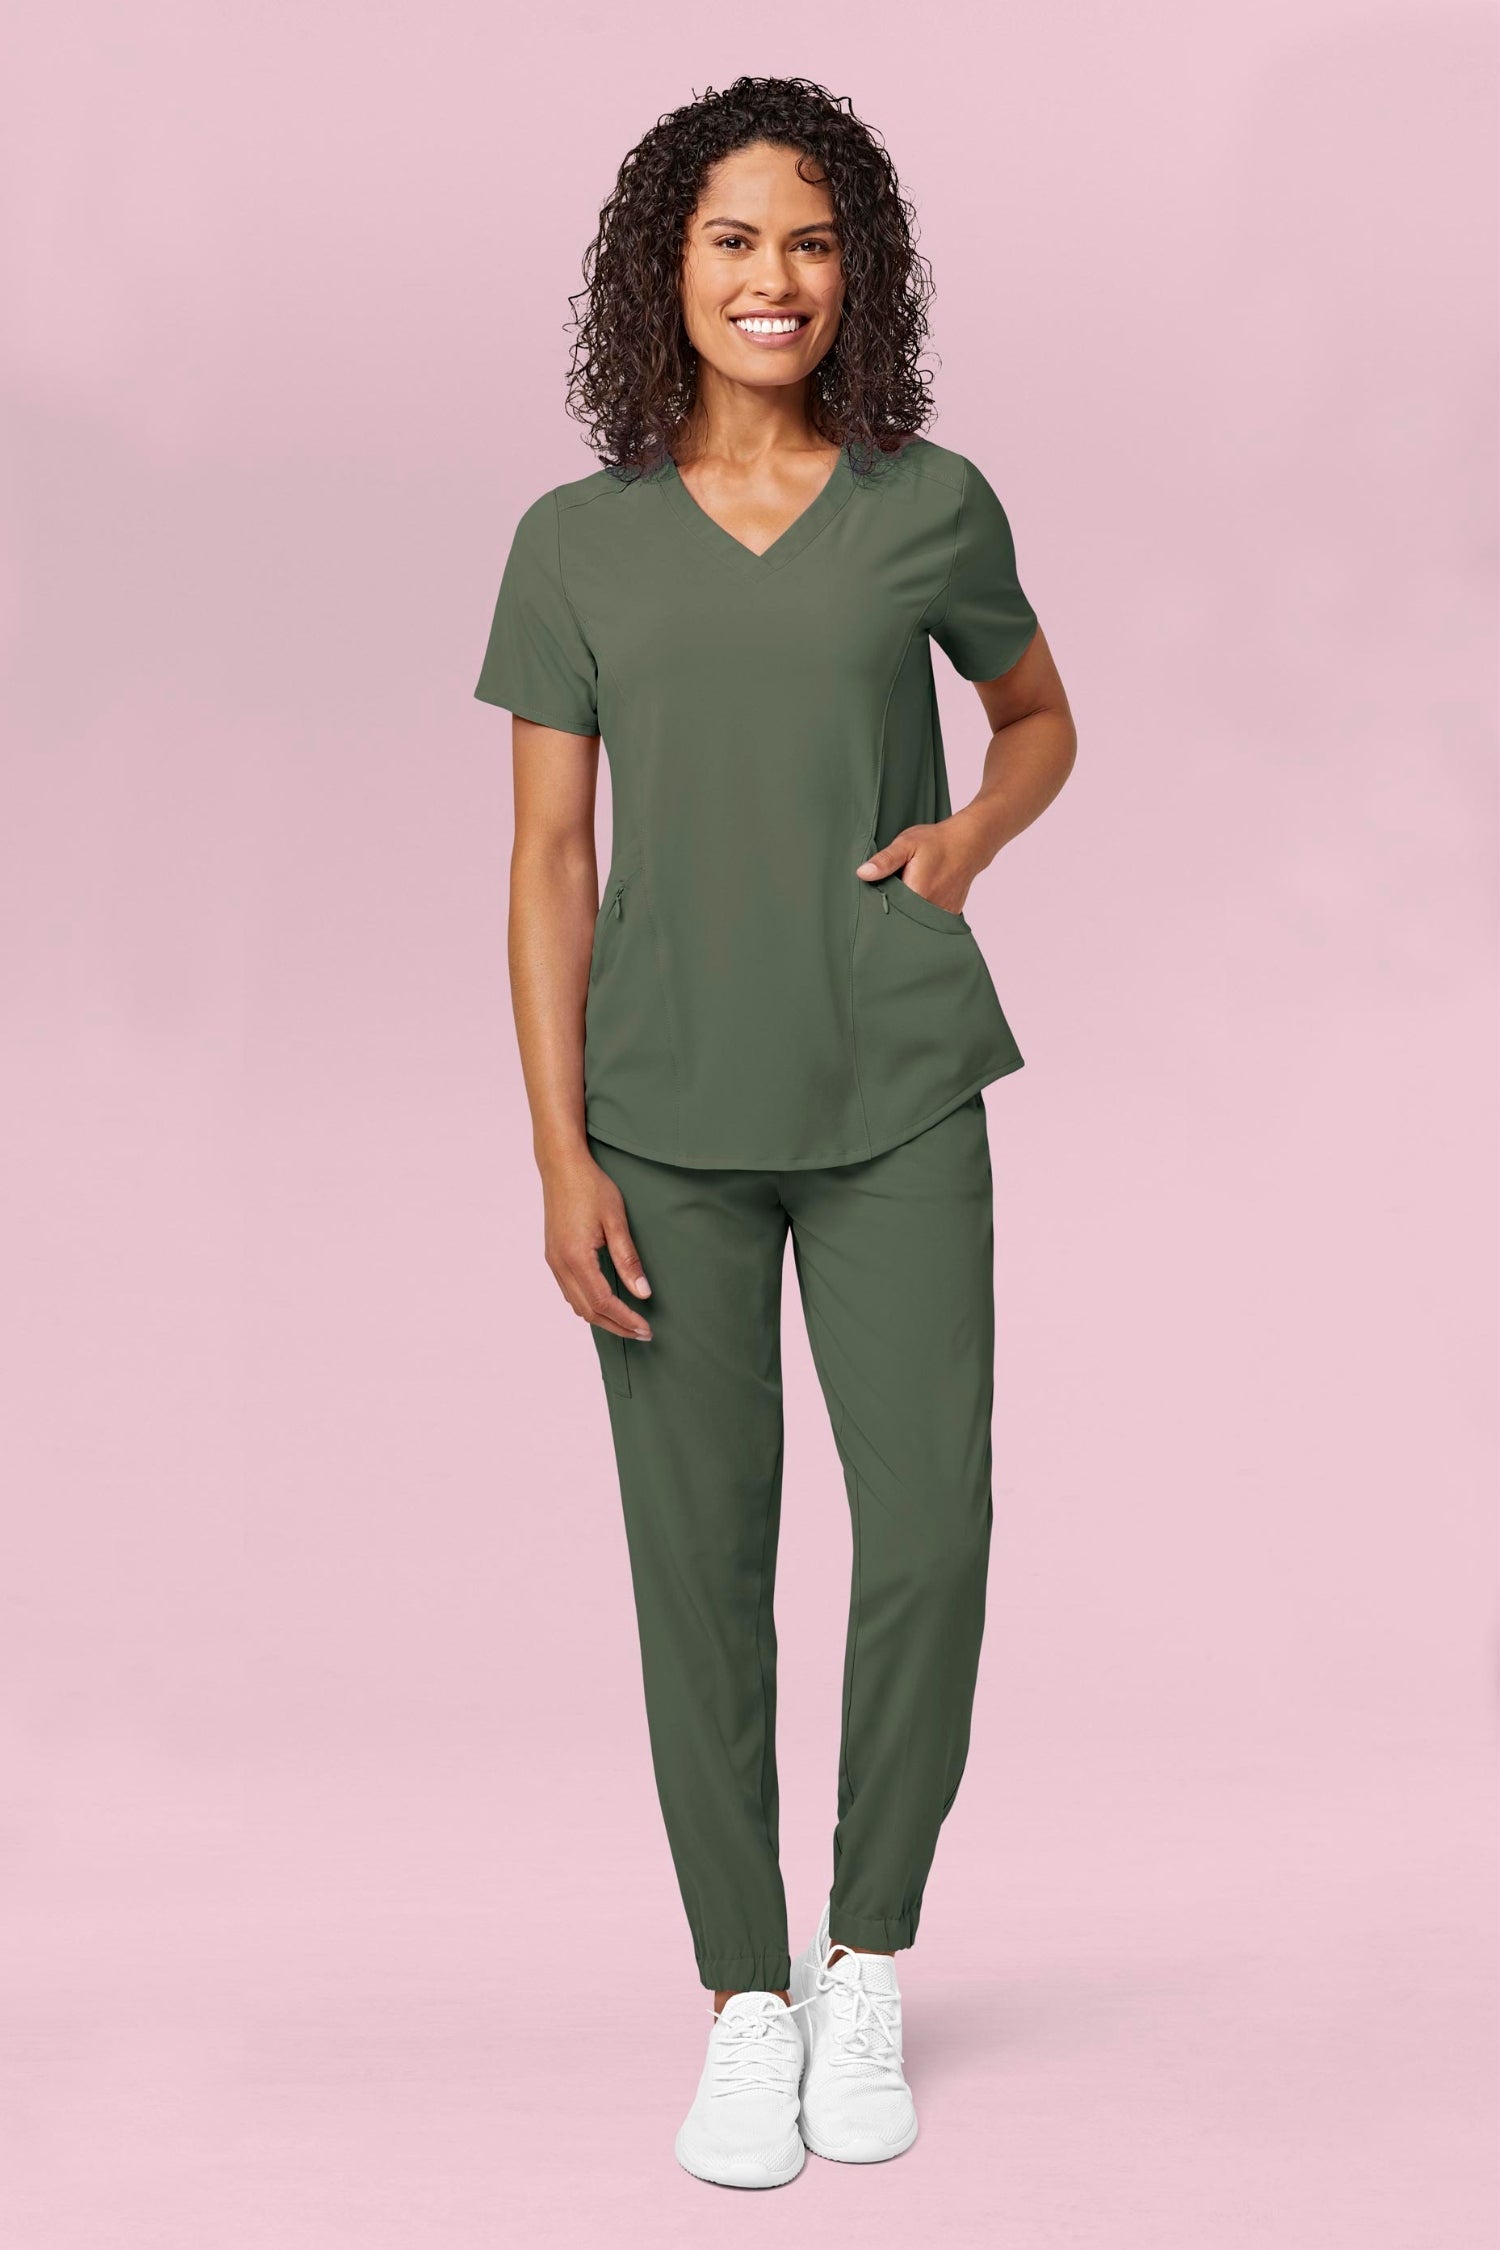 Femme en tenue médicale verte olive avec poches à fermeture en polyester spandex